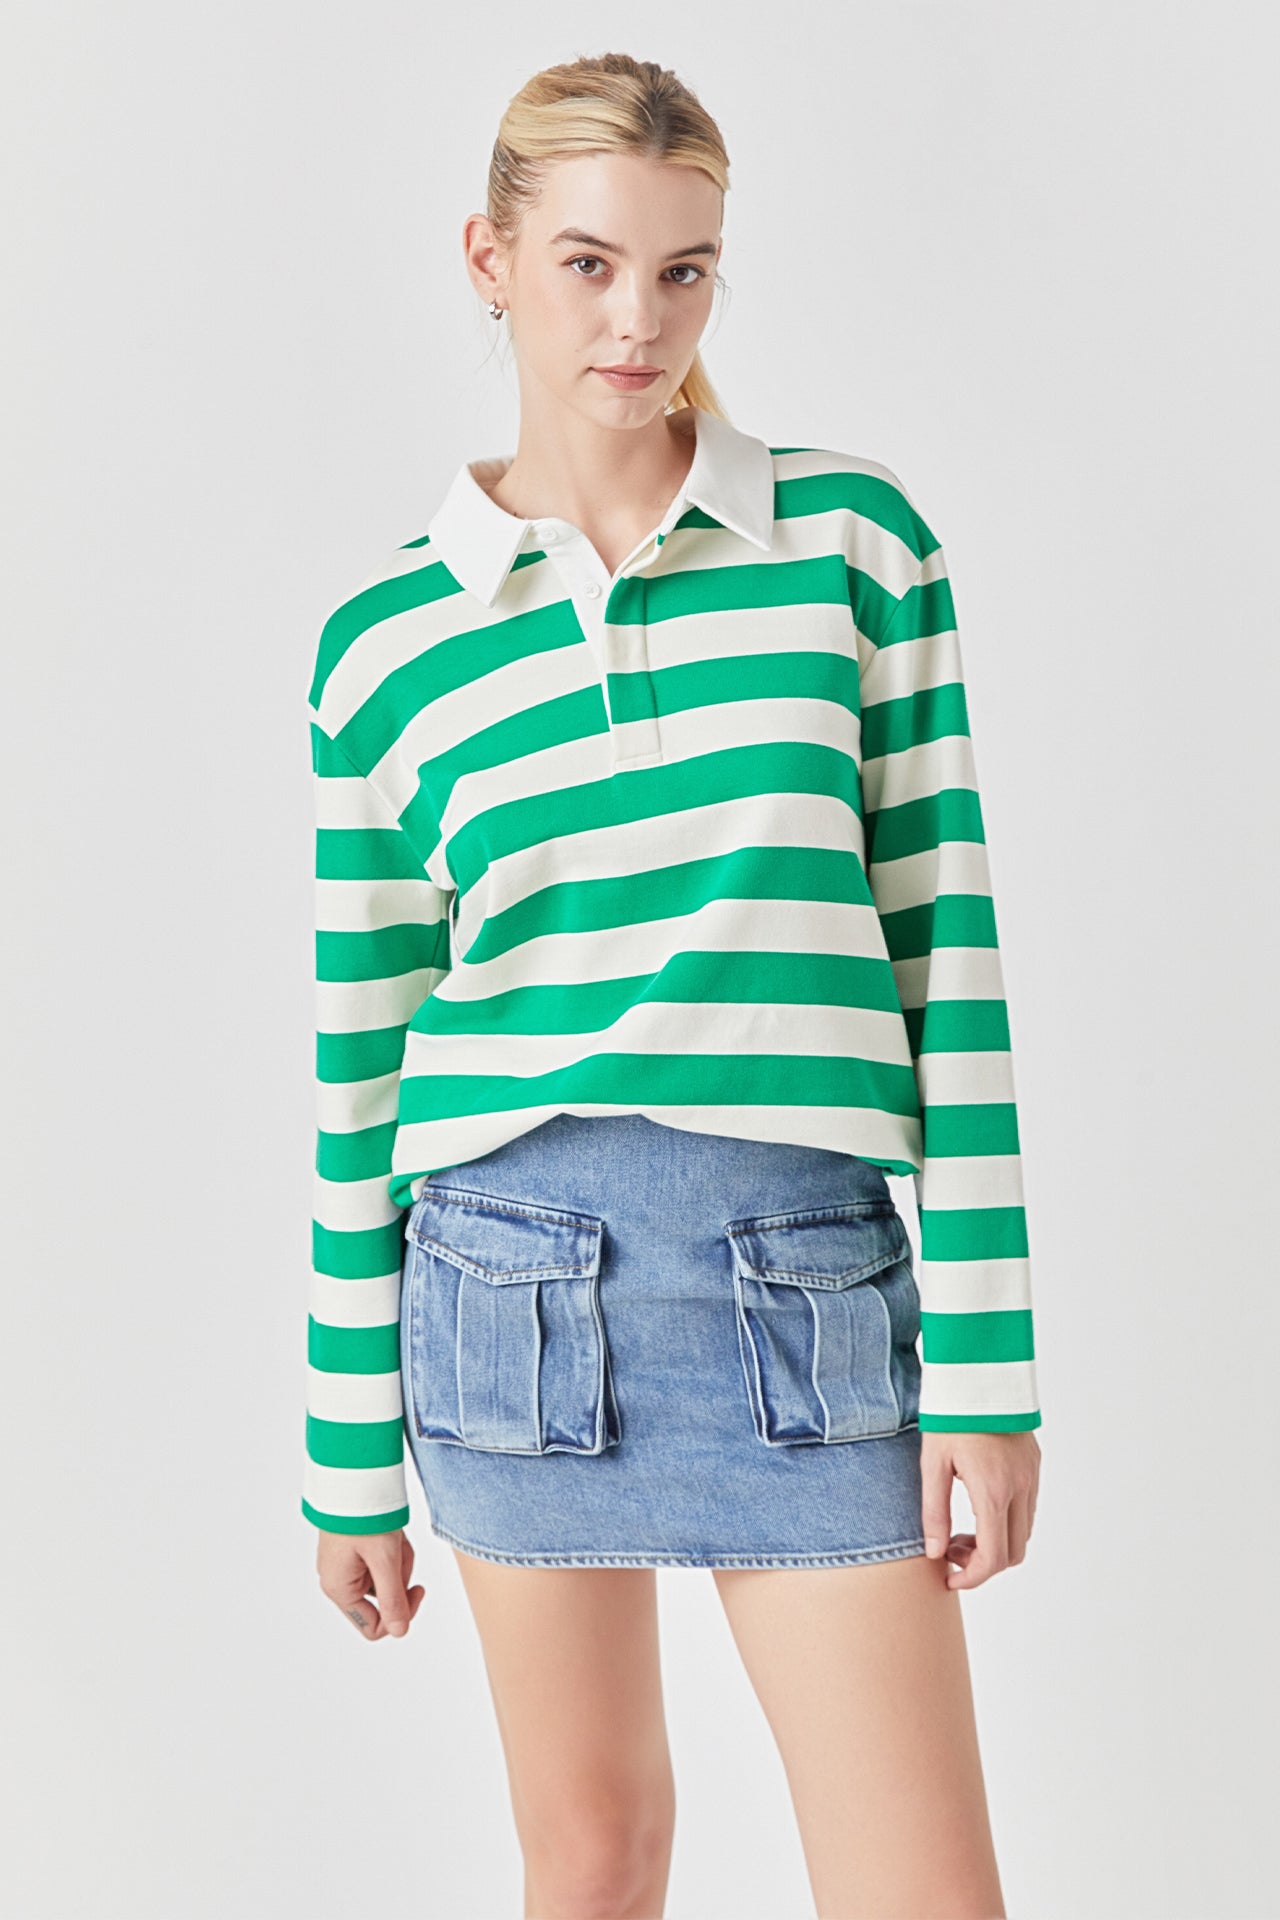 Pocket Denim Mini Skirt